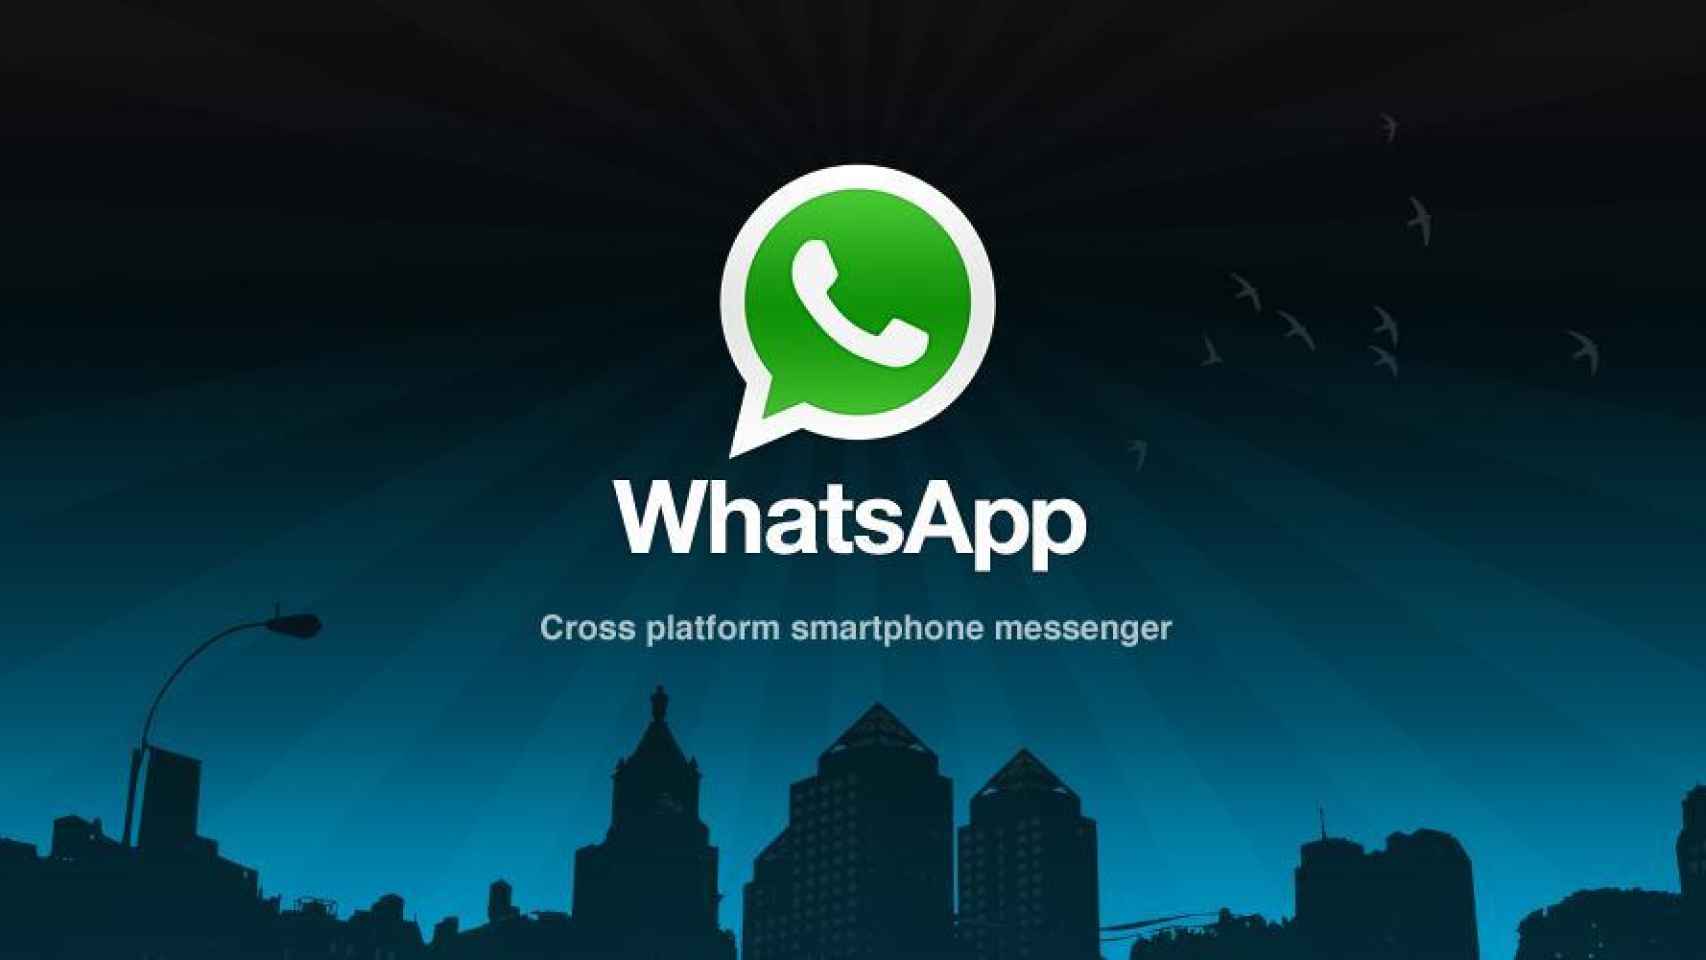 Guarda, restaura y accede a todas tus conversaciones de WhatsApp